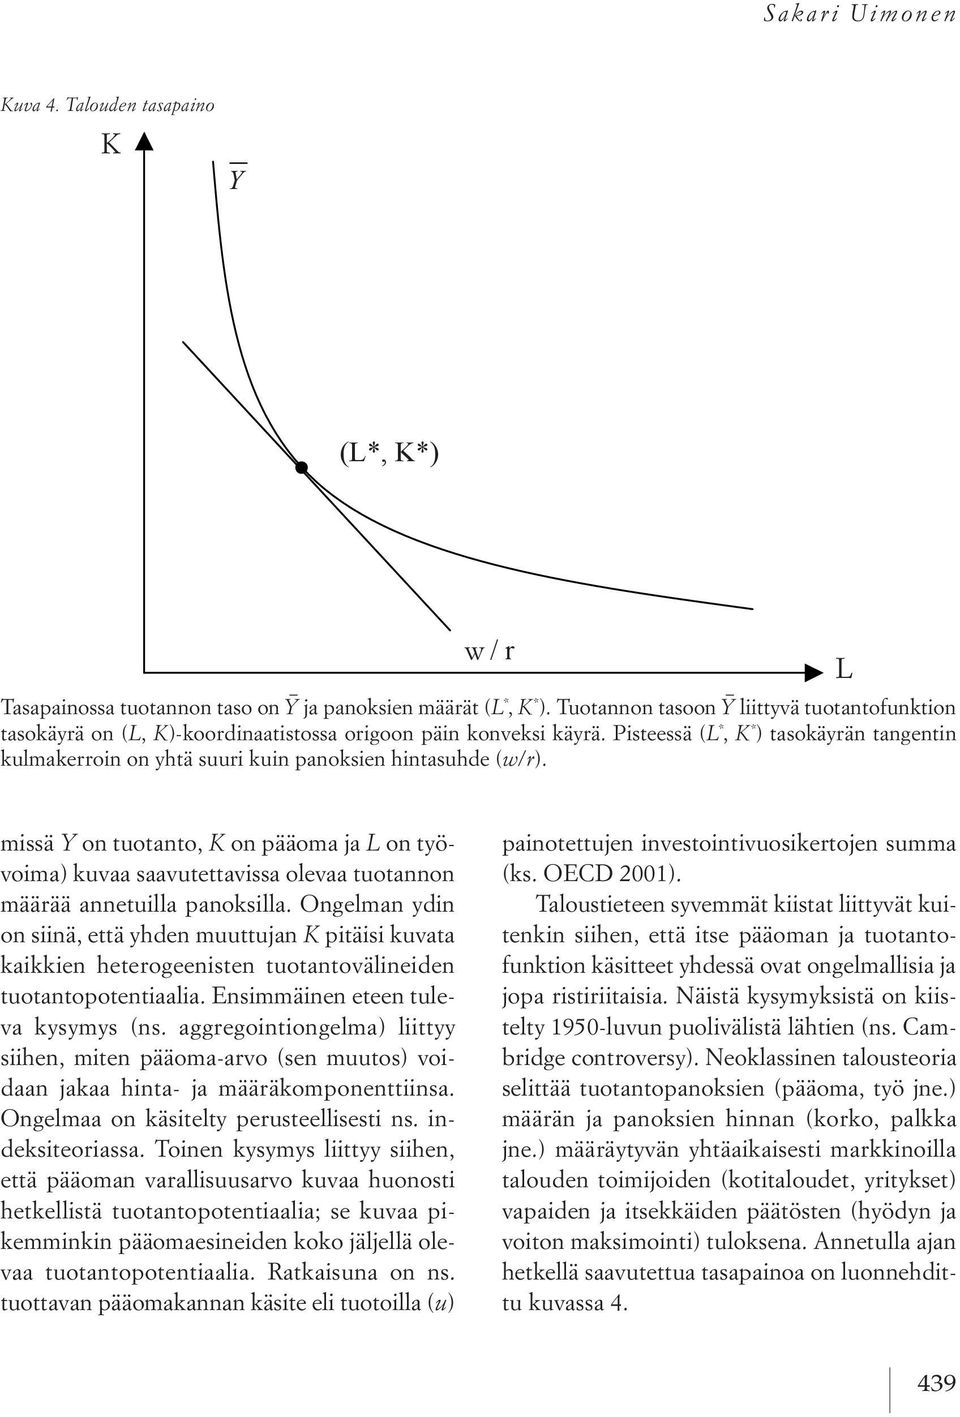 pisteessä (L *, K * )tasokäyrän tangentin kulmakerroin on yhtä suuri kuin panoksien hintasuhde (w/r).